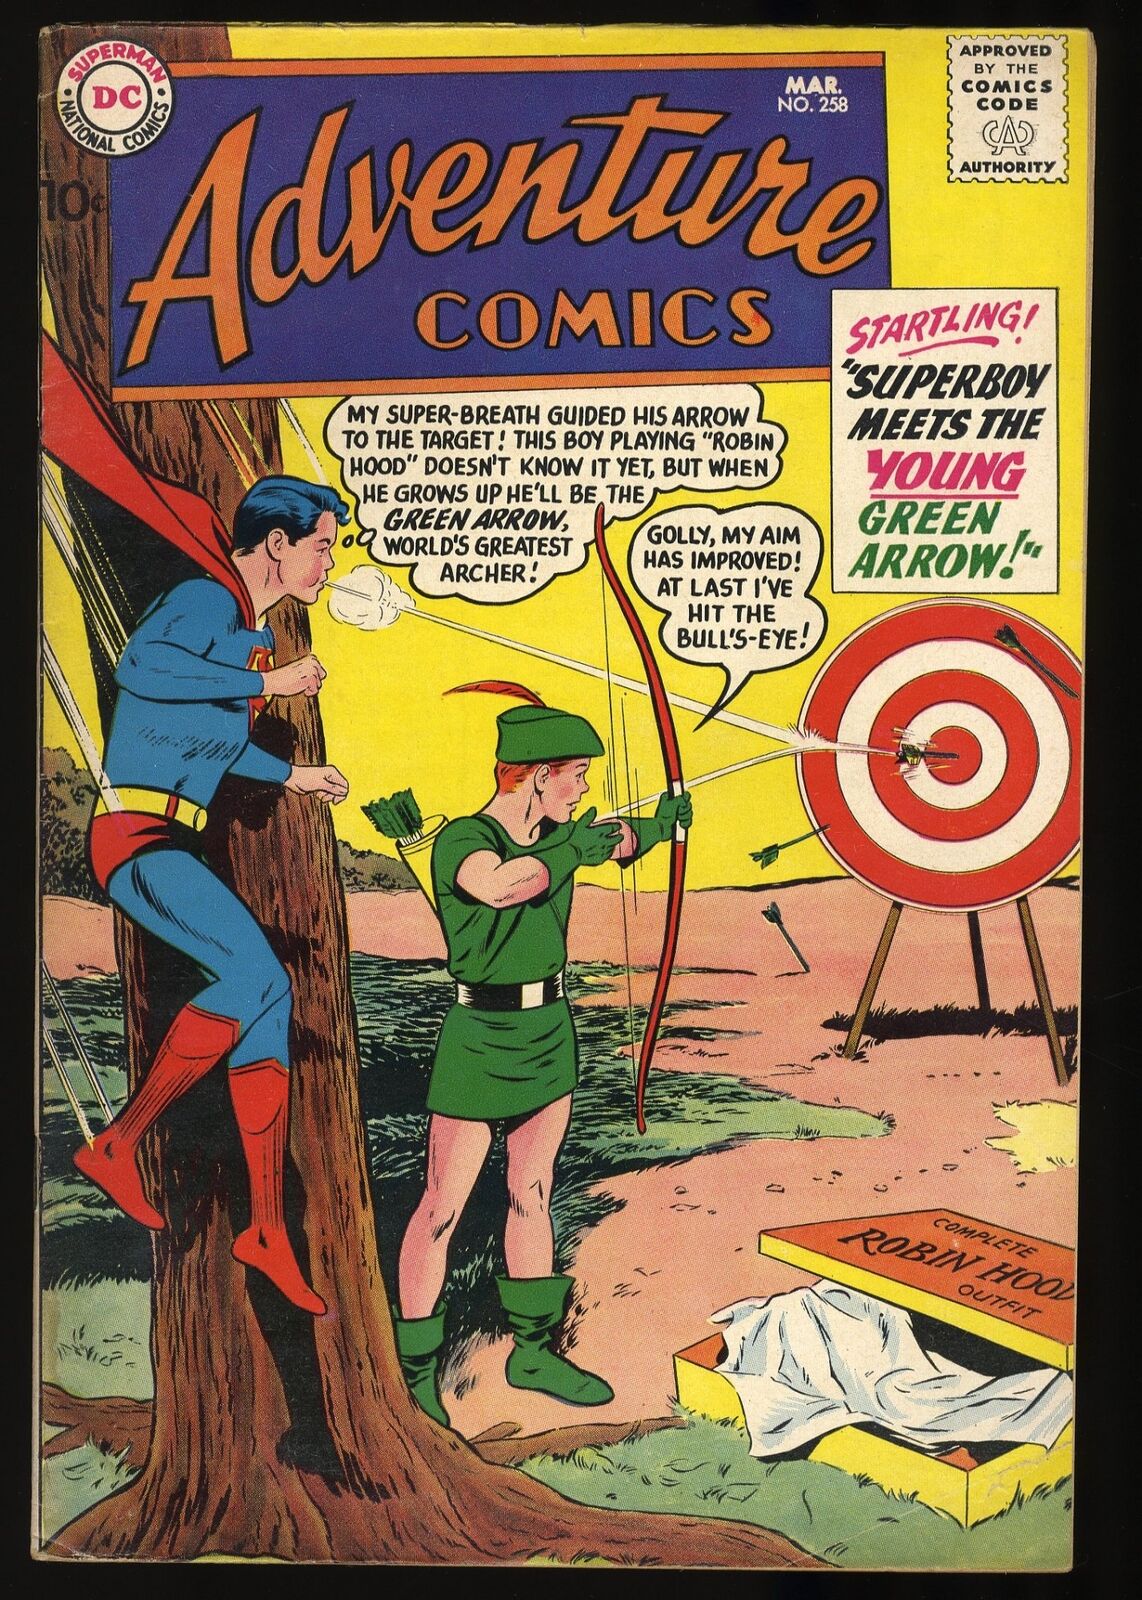 Adventure Comics #258 VG+ 4.5 Superboy meets Green Arrow DC Comics 1959